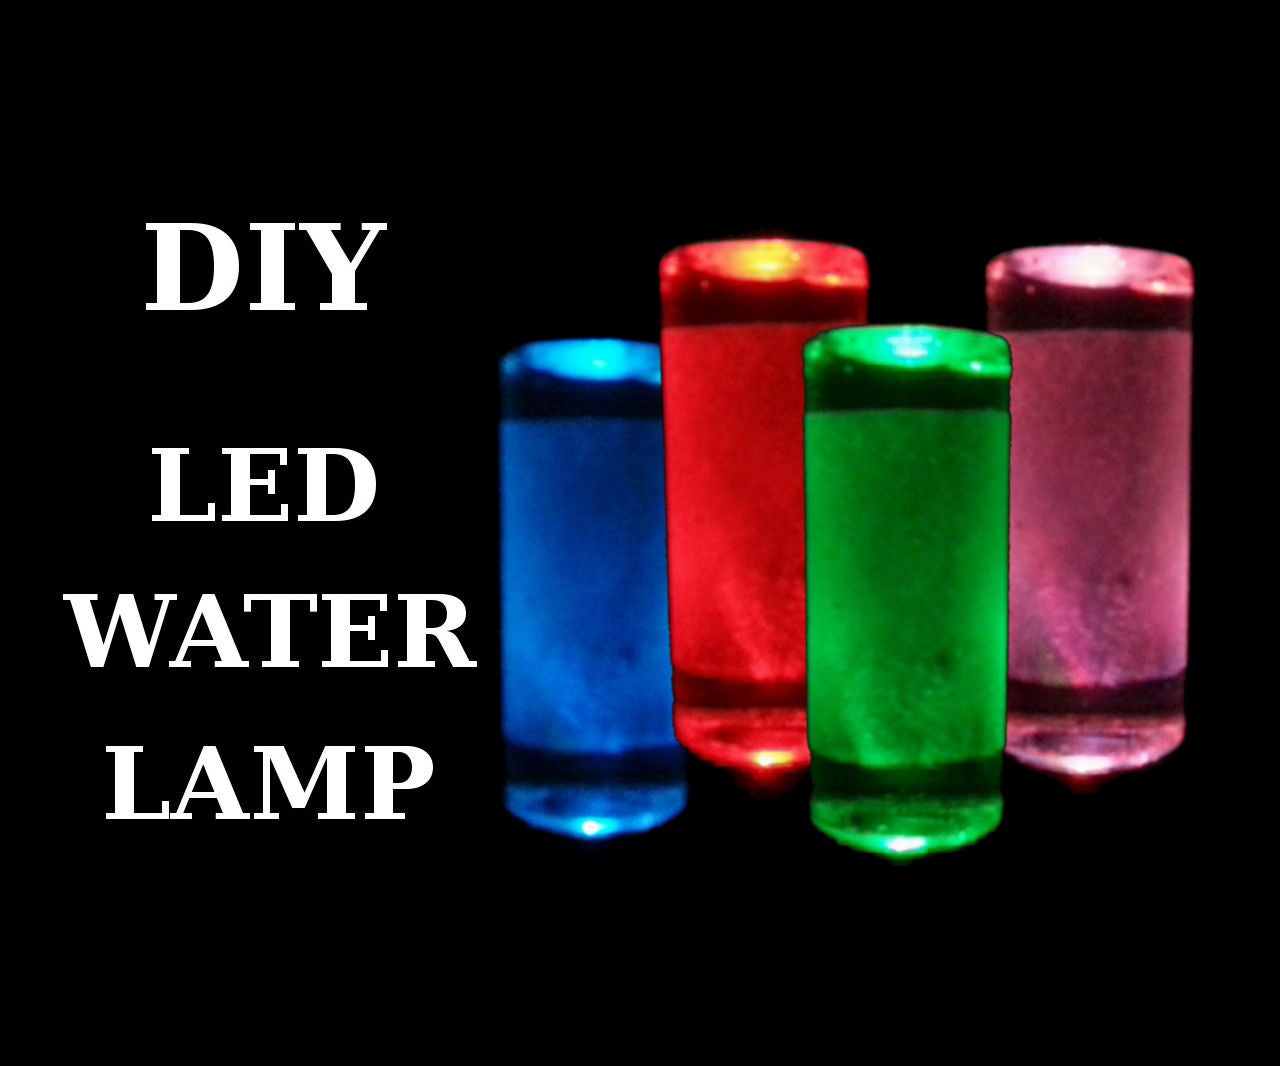 DIY - LED Water Lamp